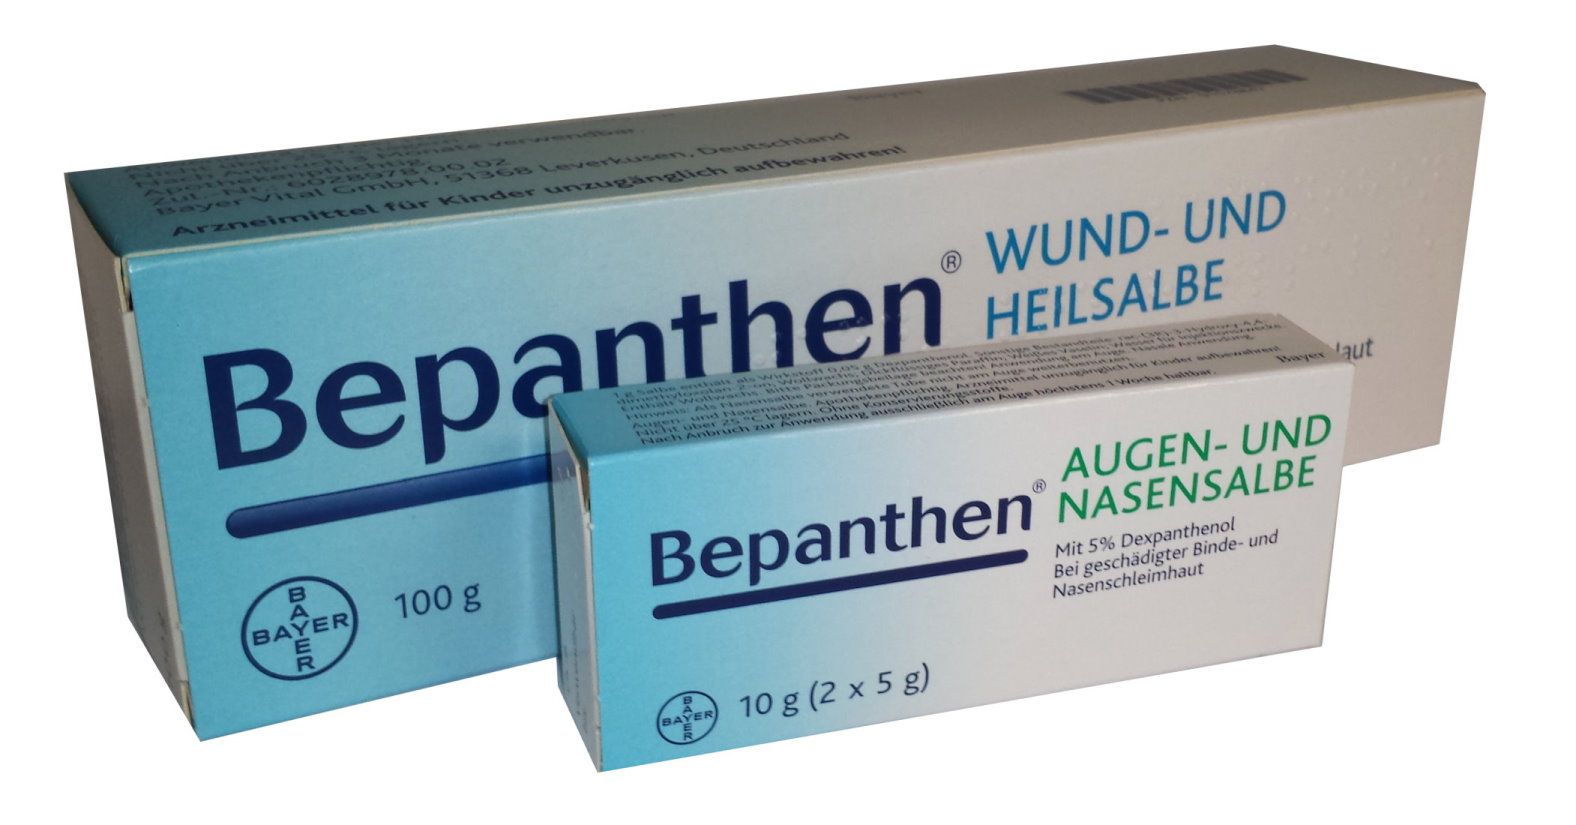 Bepanthen SparSet Wund-&Heilsalbe + Augen-&Nasensalbe